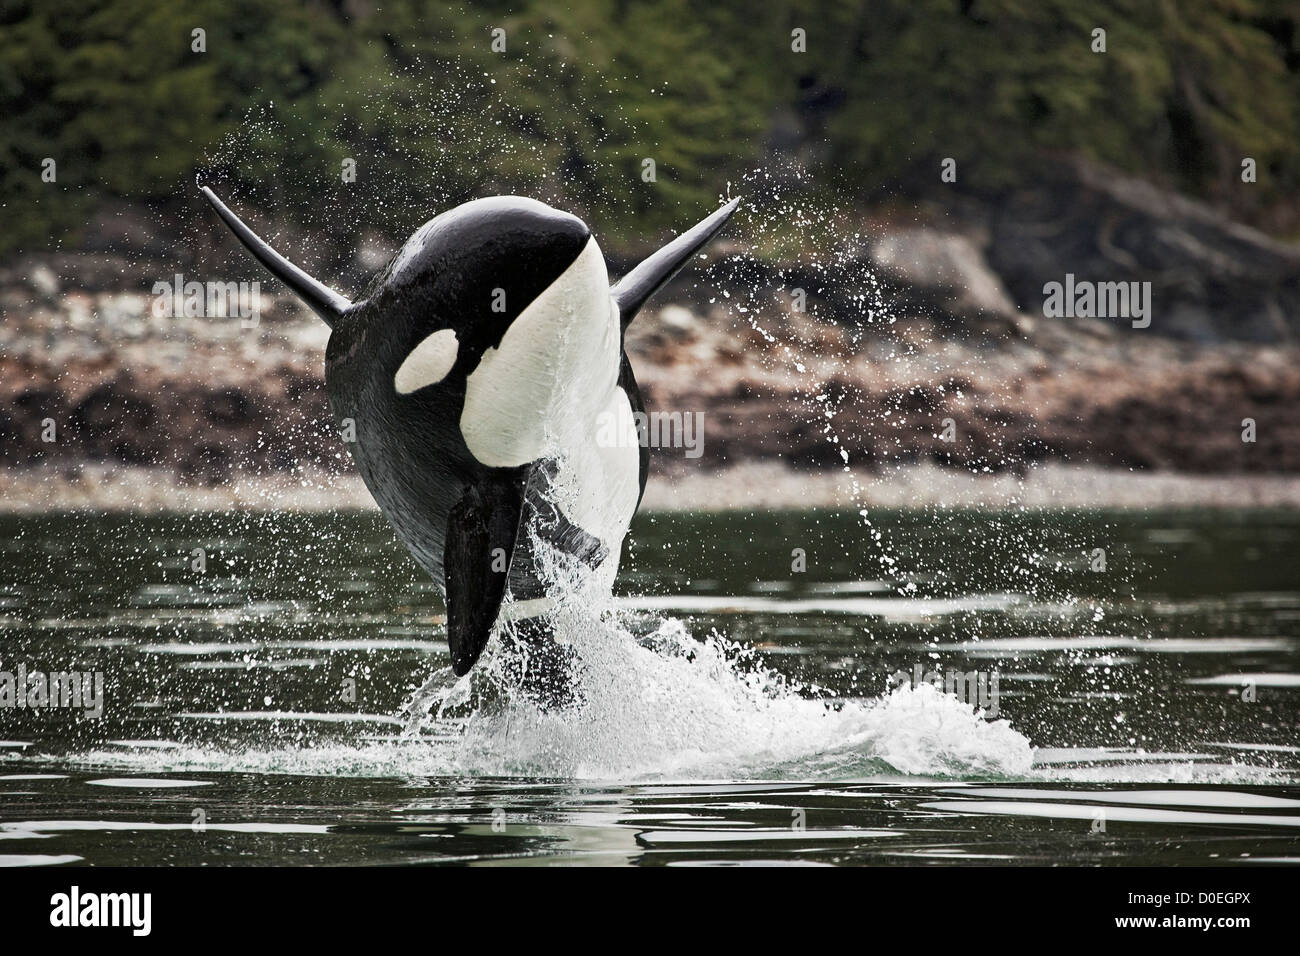 Un homme orca peuvent être identifiés facilement sa grande nageoire dorsale droite. Les femelles ont des nageoires dorsales significativement plus petits peu courbe. Banque D'Images